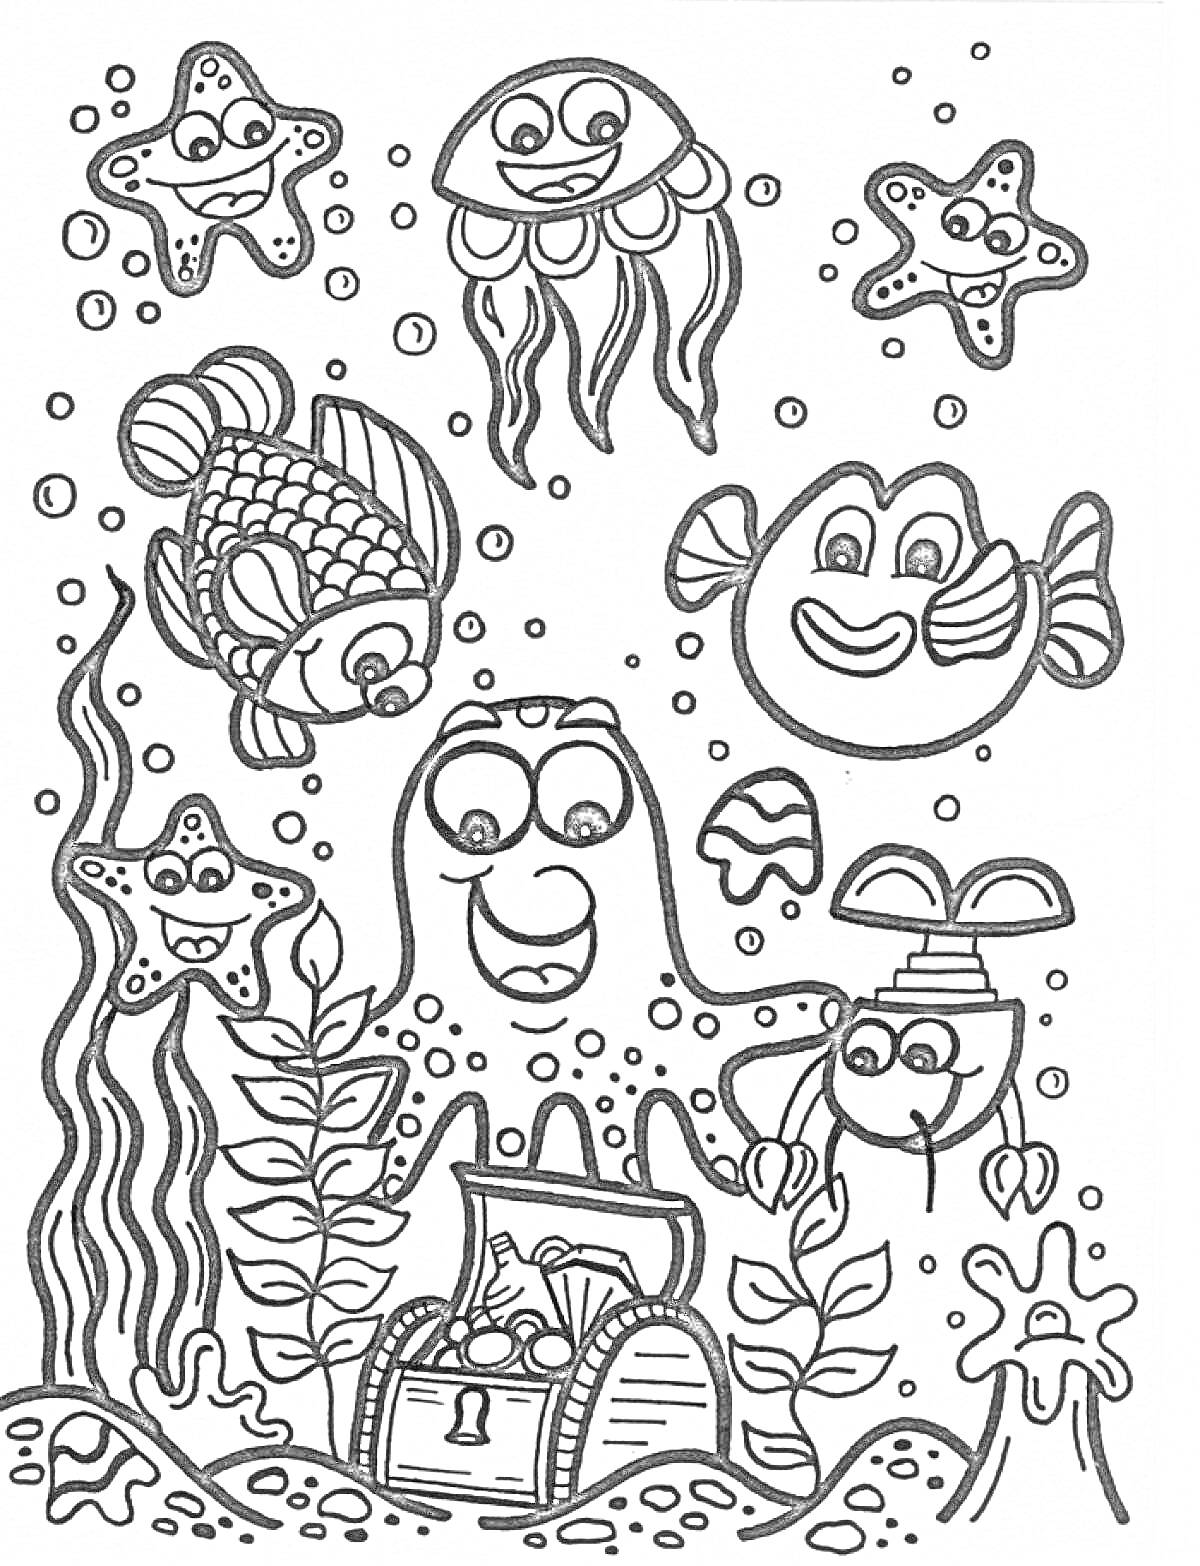 Раскраска Морские обитатели - рыбы, осьминог с сундуком, медуза, морские звезды, водоросли